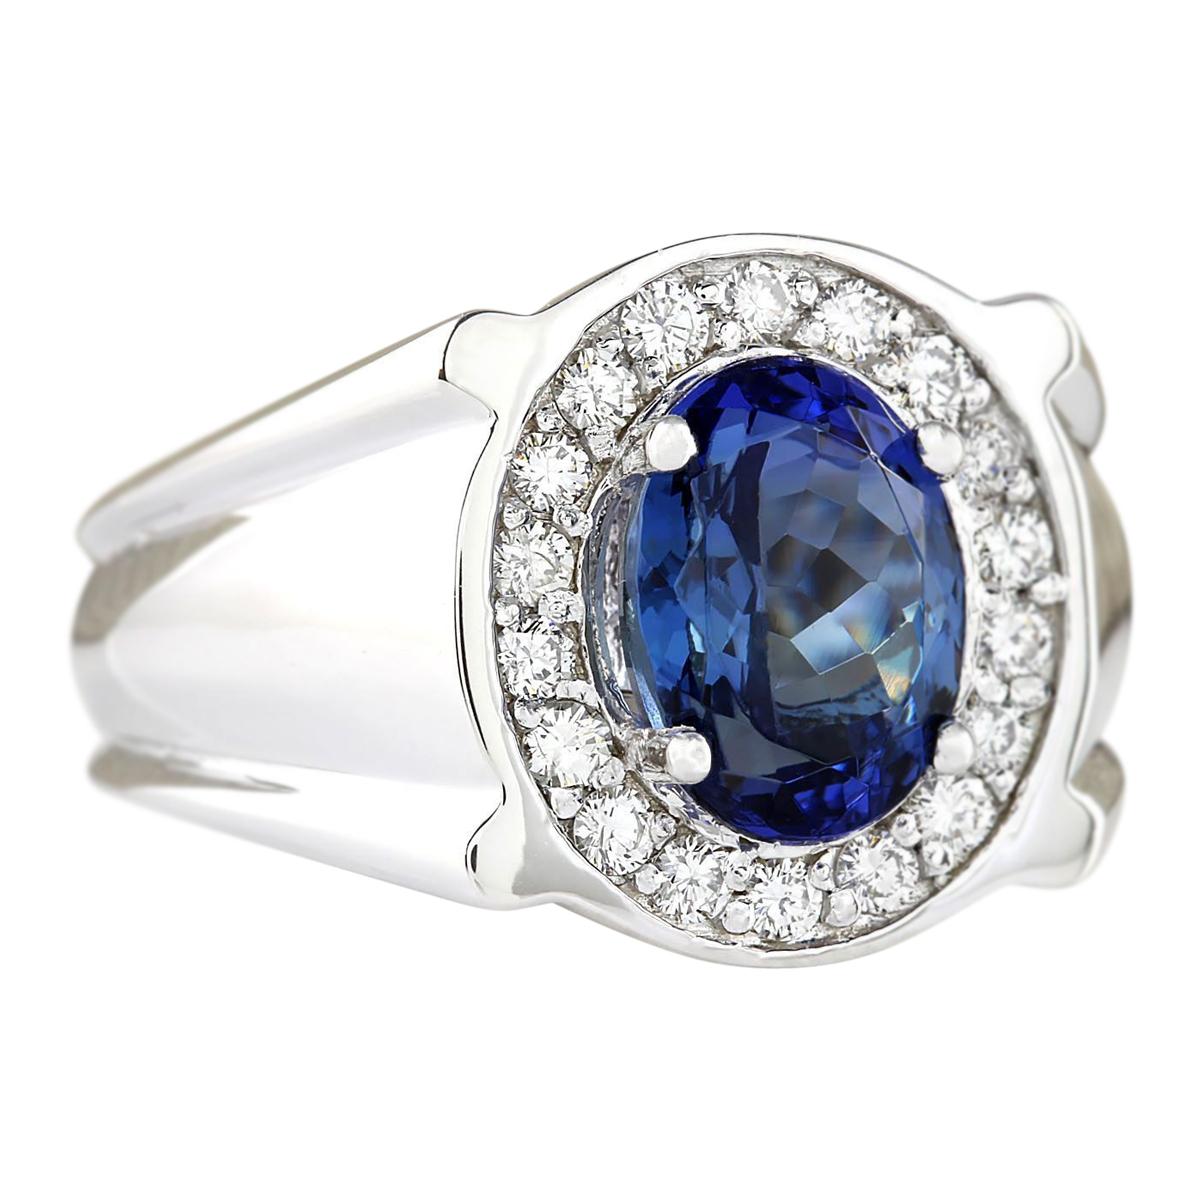 4.51 Carat Natural Tanzanite 14 Karat White Gold Diamond Ring
Stamped: 14K White Gold
Total Ring Weight: 13.0 Grams
Total Natural Tanzanite Weight is 4.01 Carat (Measures: 10.00x8.00 mm)
Color: Blue
Total Natural Diamond Weight is 0.50 Carat
Color: